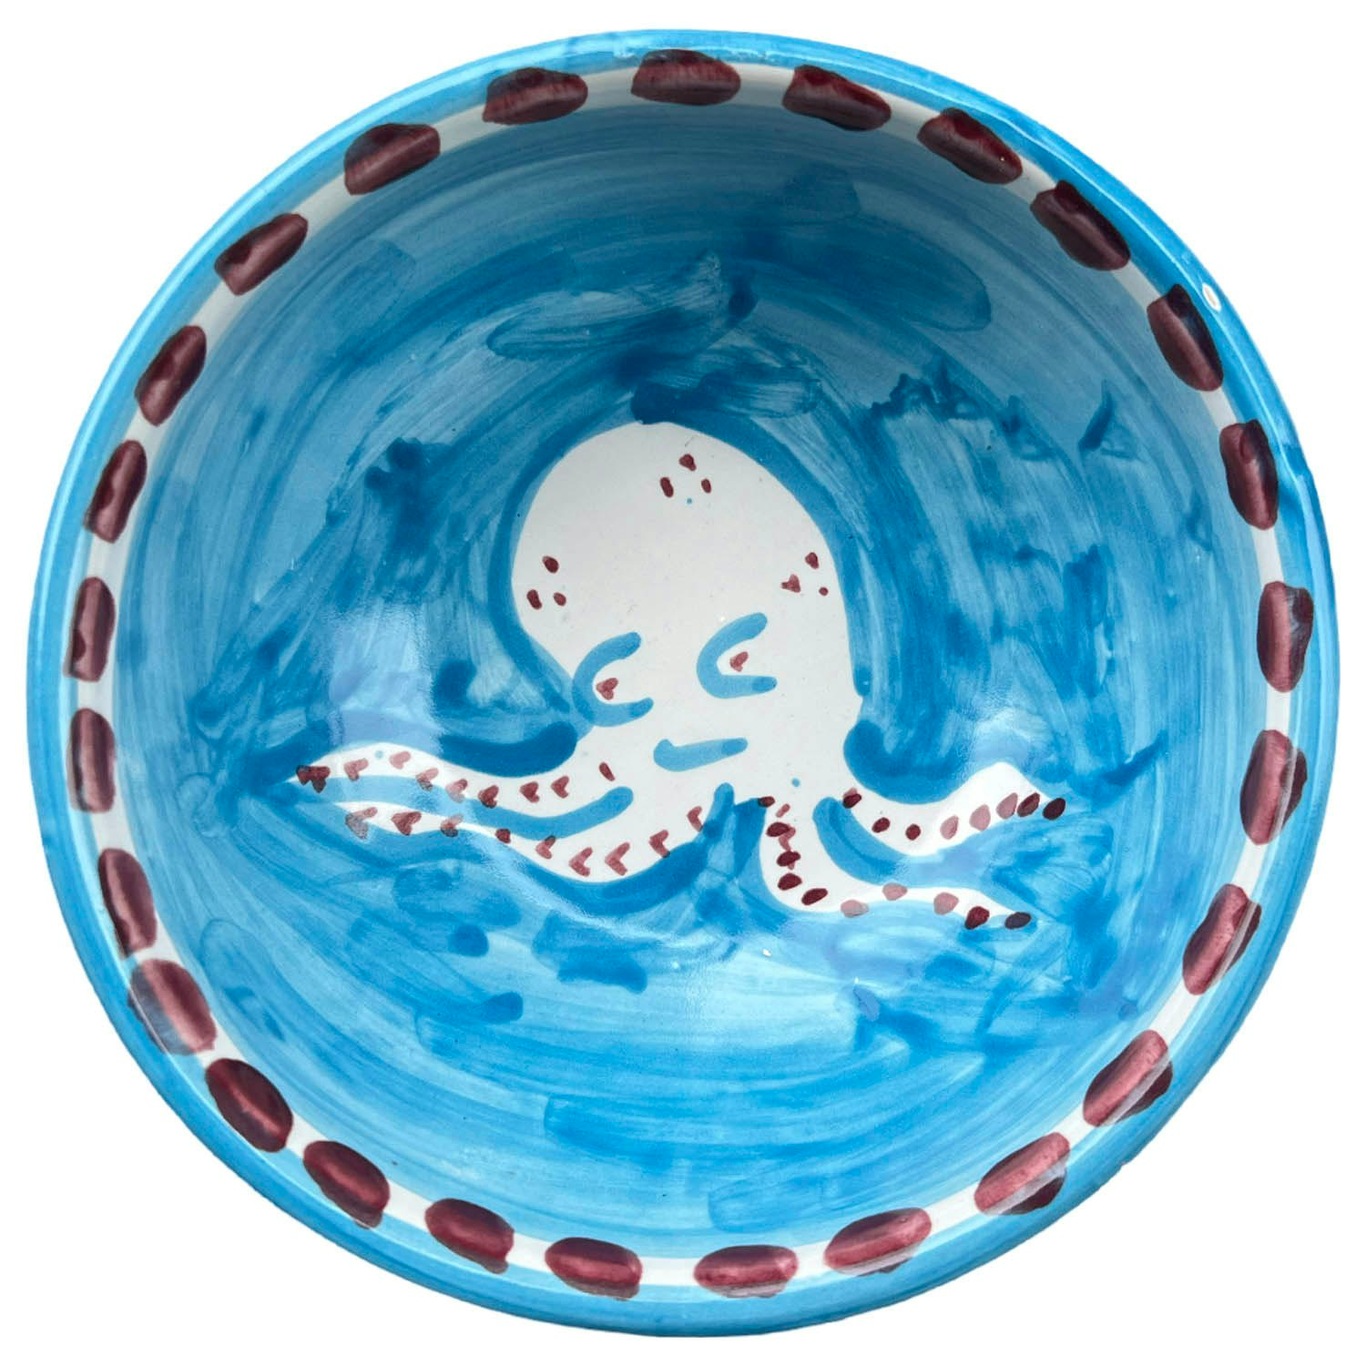 Amalfi Bowl 13 cm, Turquoise